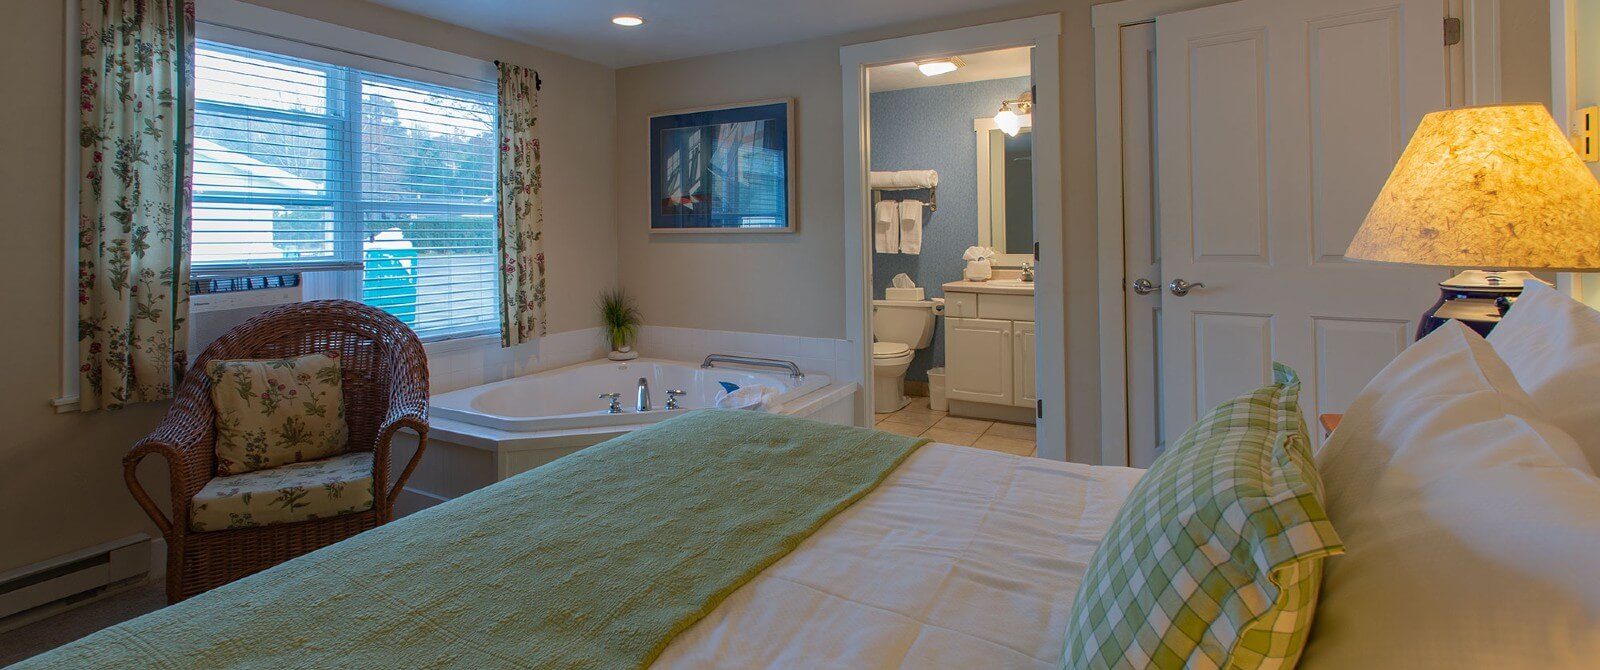 Bedroom with queen bed, corner jacuzzi tub and doorway open to a bathroom